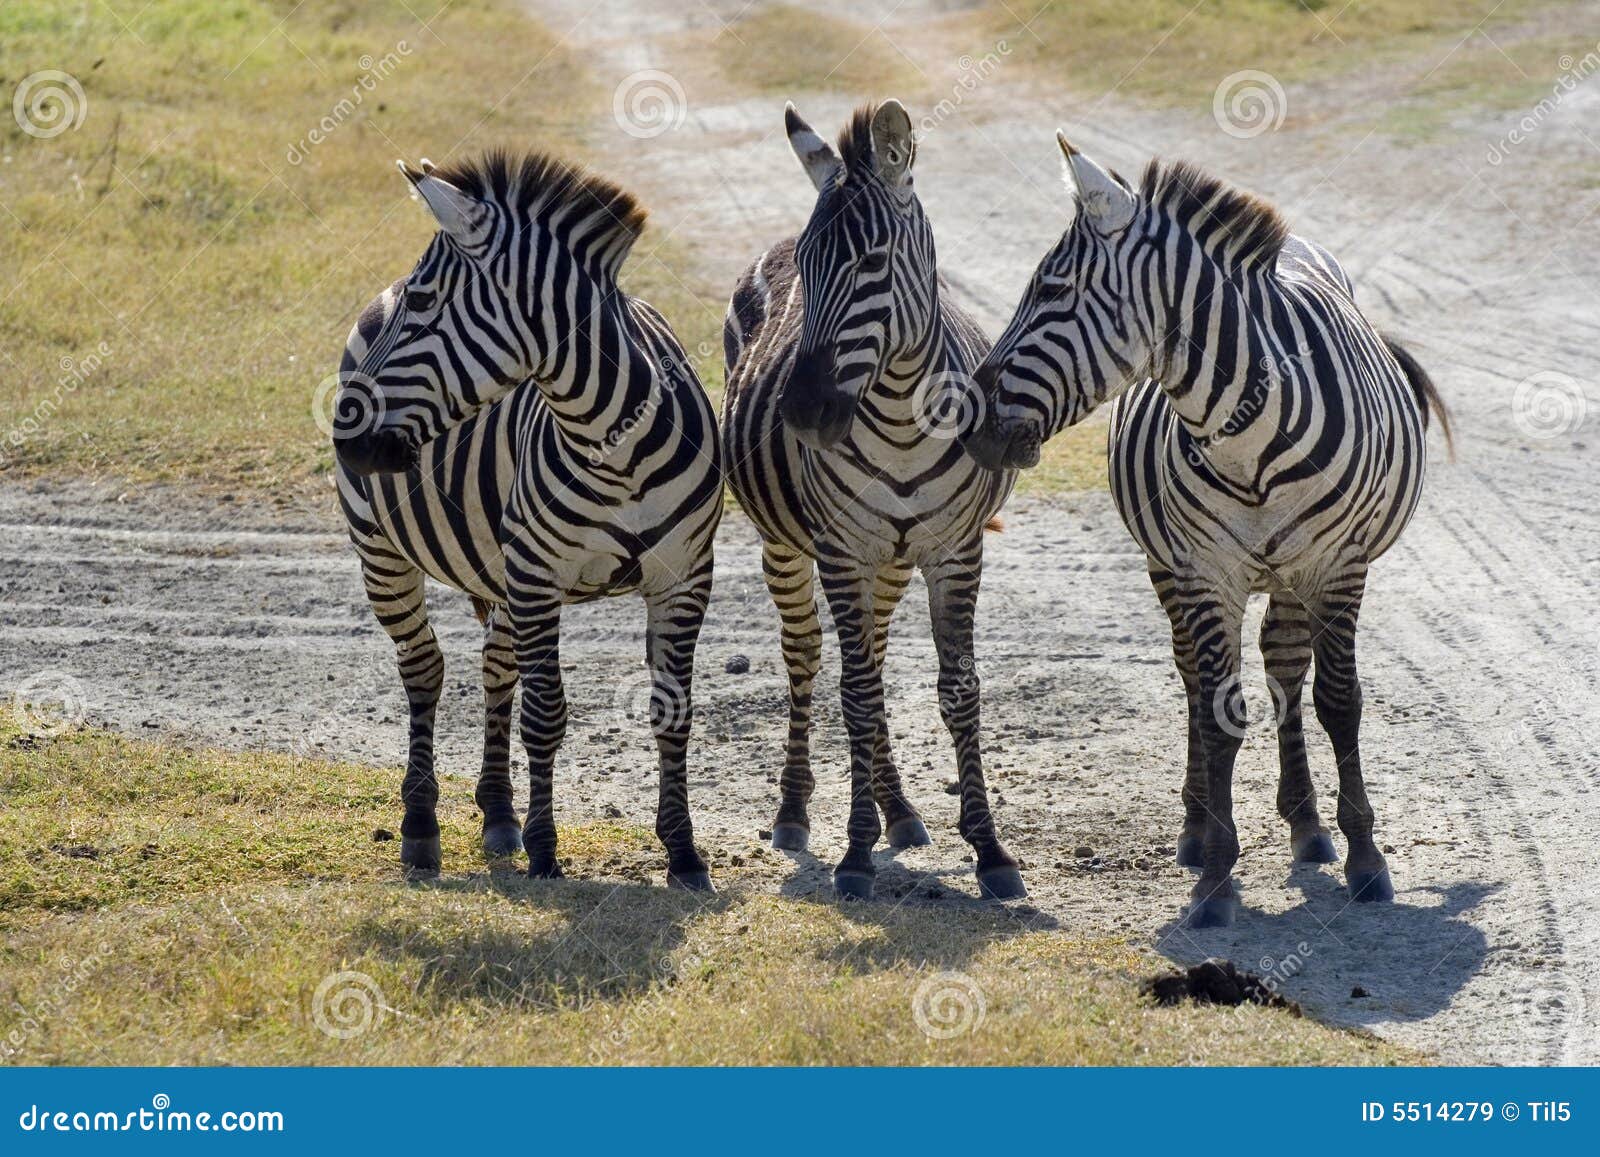 gracht Kangoeroe teugels 3 zebras gossip stock image. Image of watch, africa, zebra - 5514279